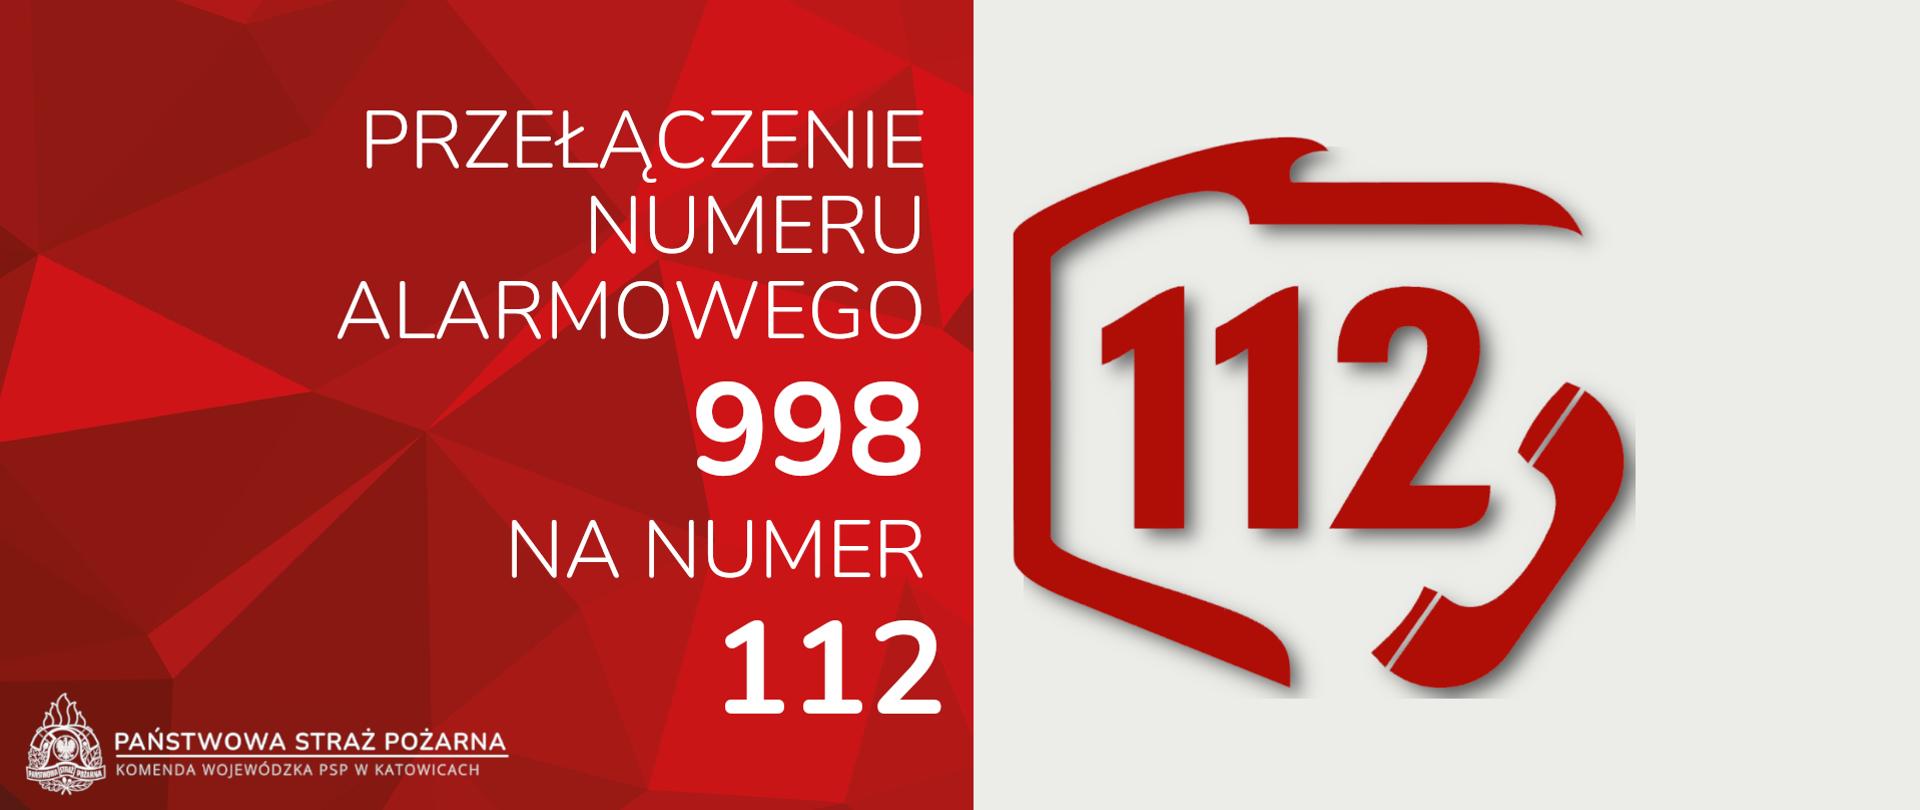 po lewej stronie na czerwonym tle napis Przełączenie numeru alarmowego 998 na numer 112, logo oraz podpis Państwowa Straż Pożarna Komenda Wojewódzka PSP w Katowicach, po prawej stronie na białym tle numer 112